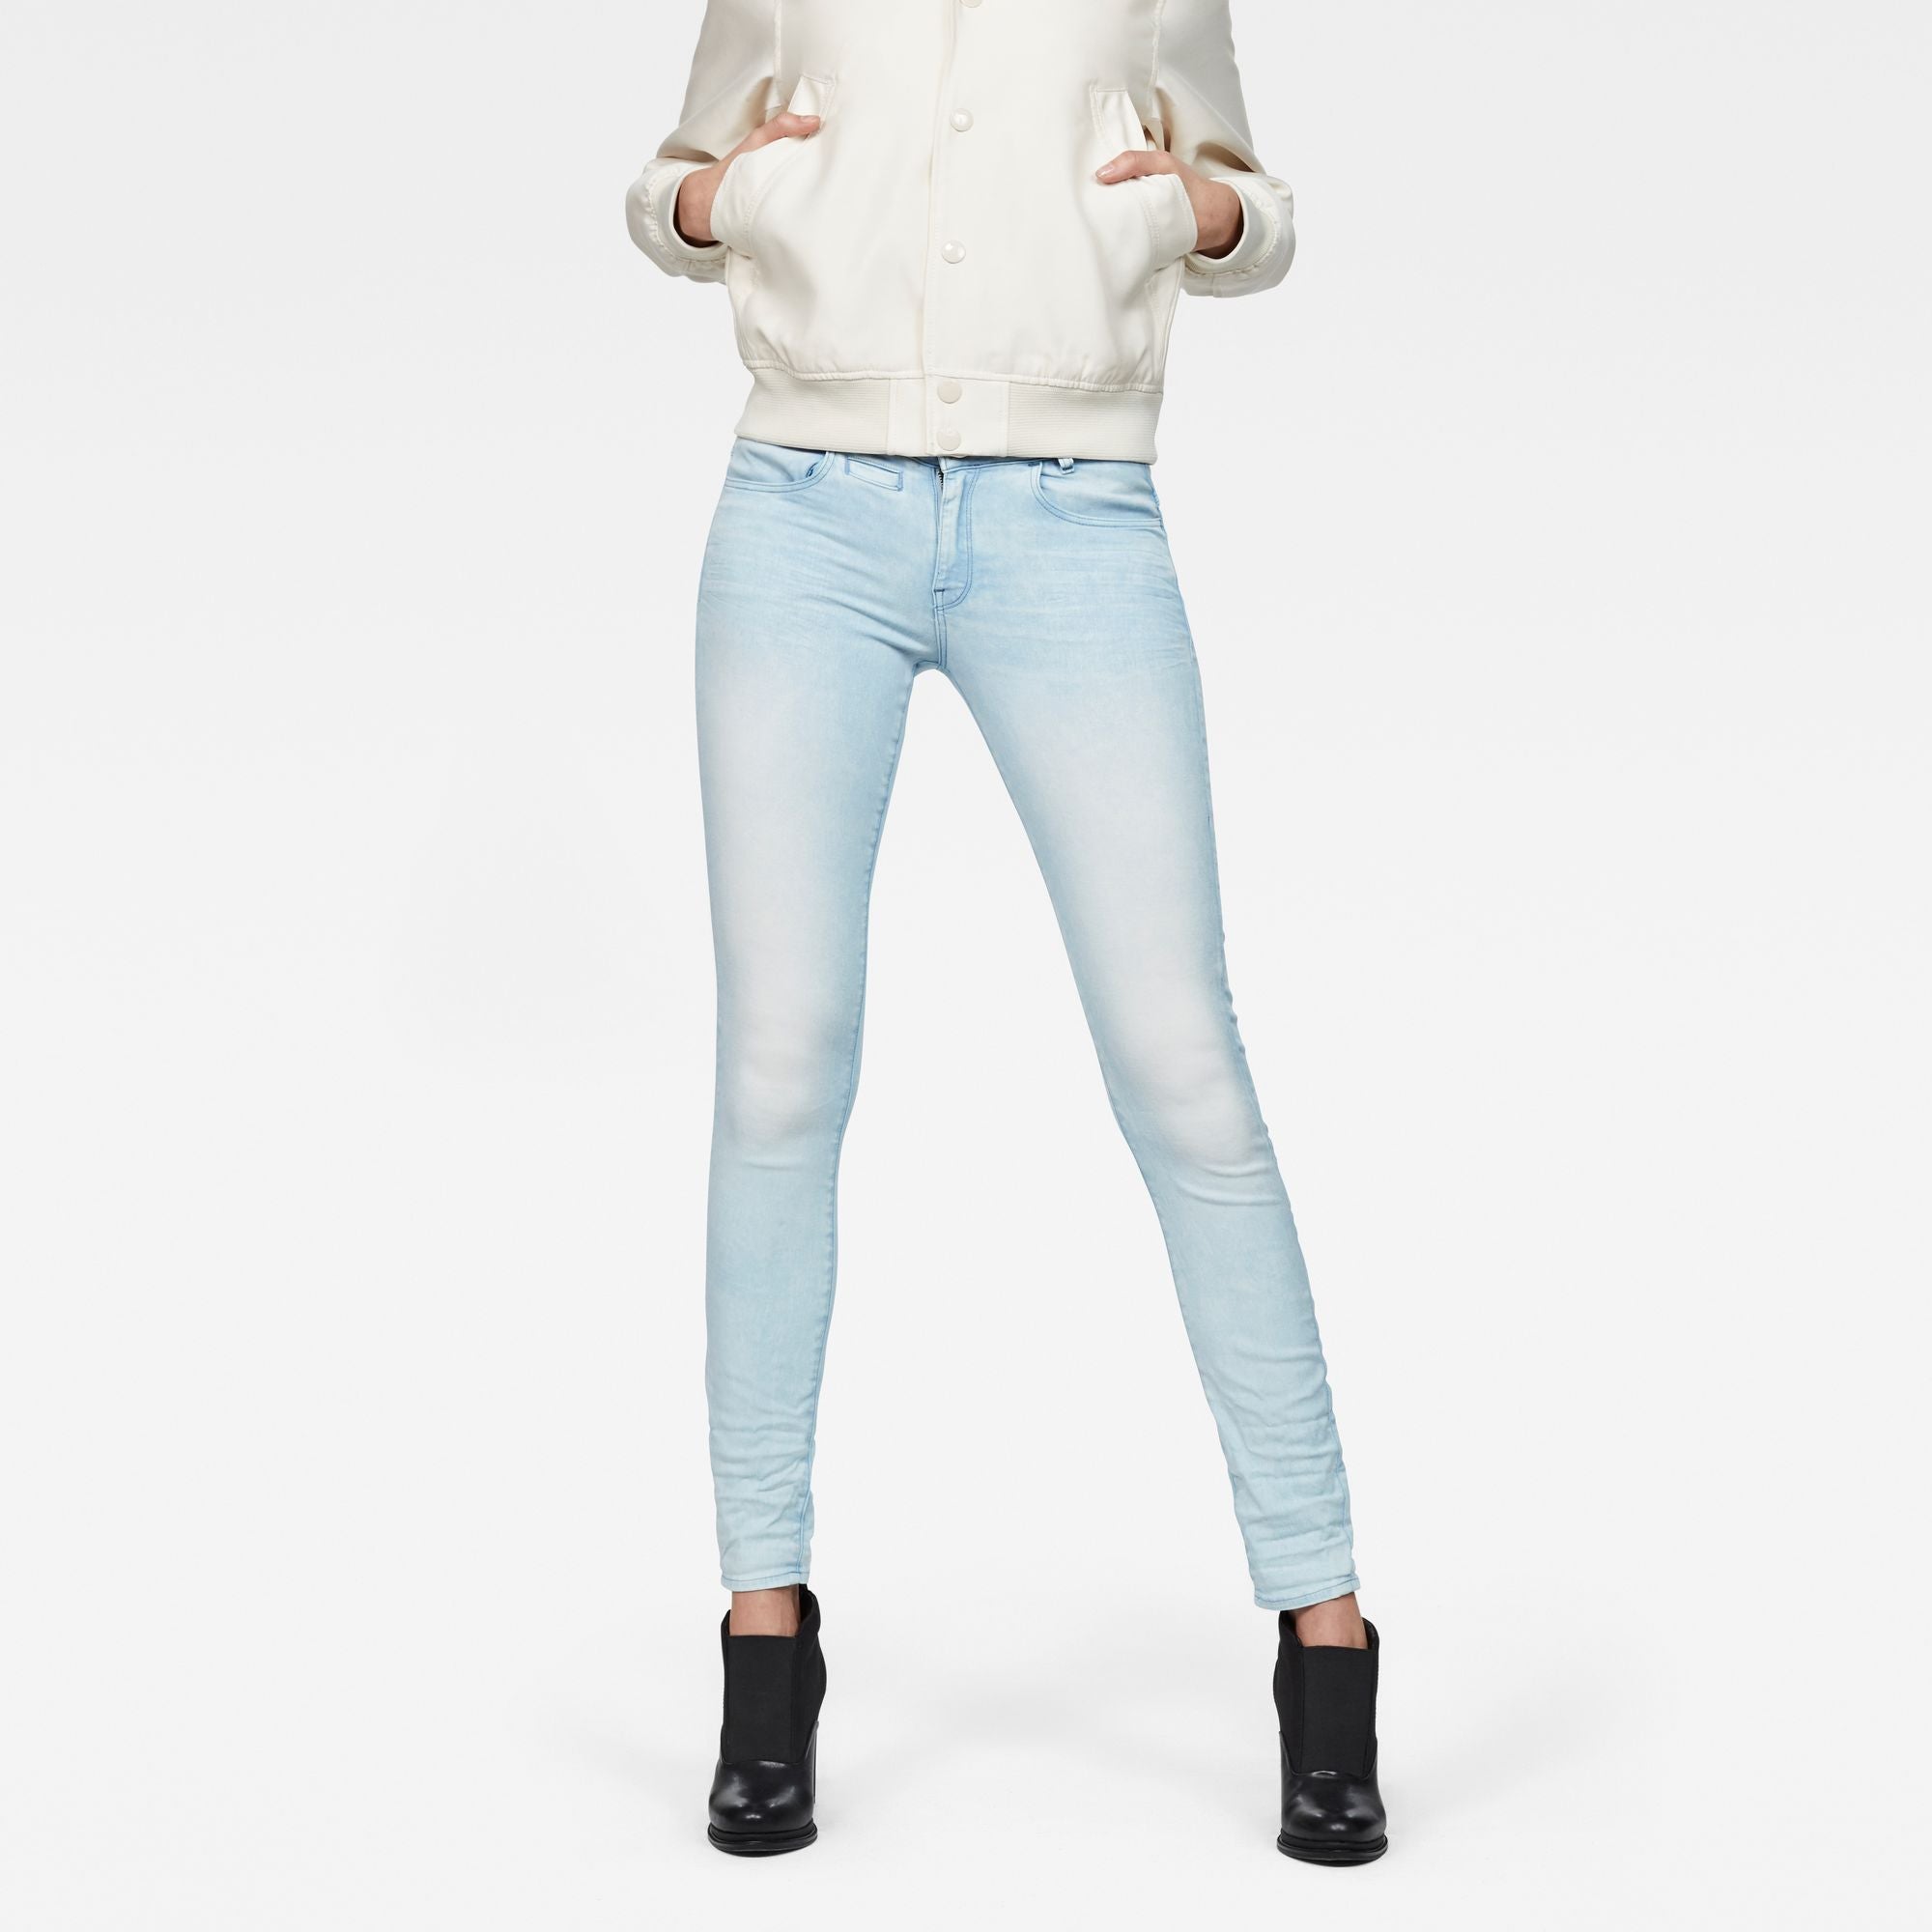 G-Star Raw D-Staq 5-Pocket Mid Skinny Sea Color Woman’s Jeans Denim